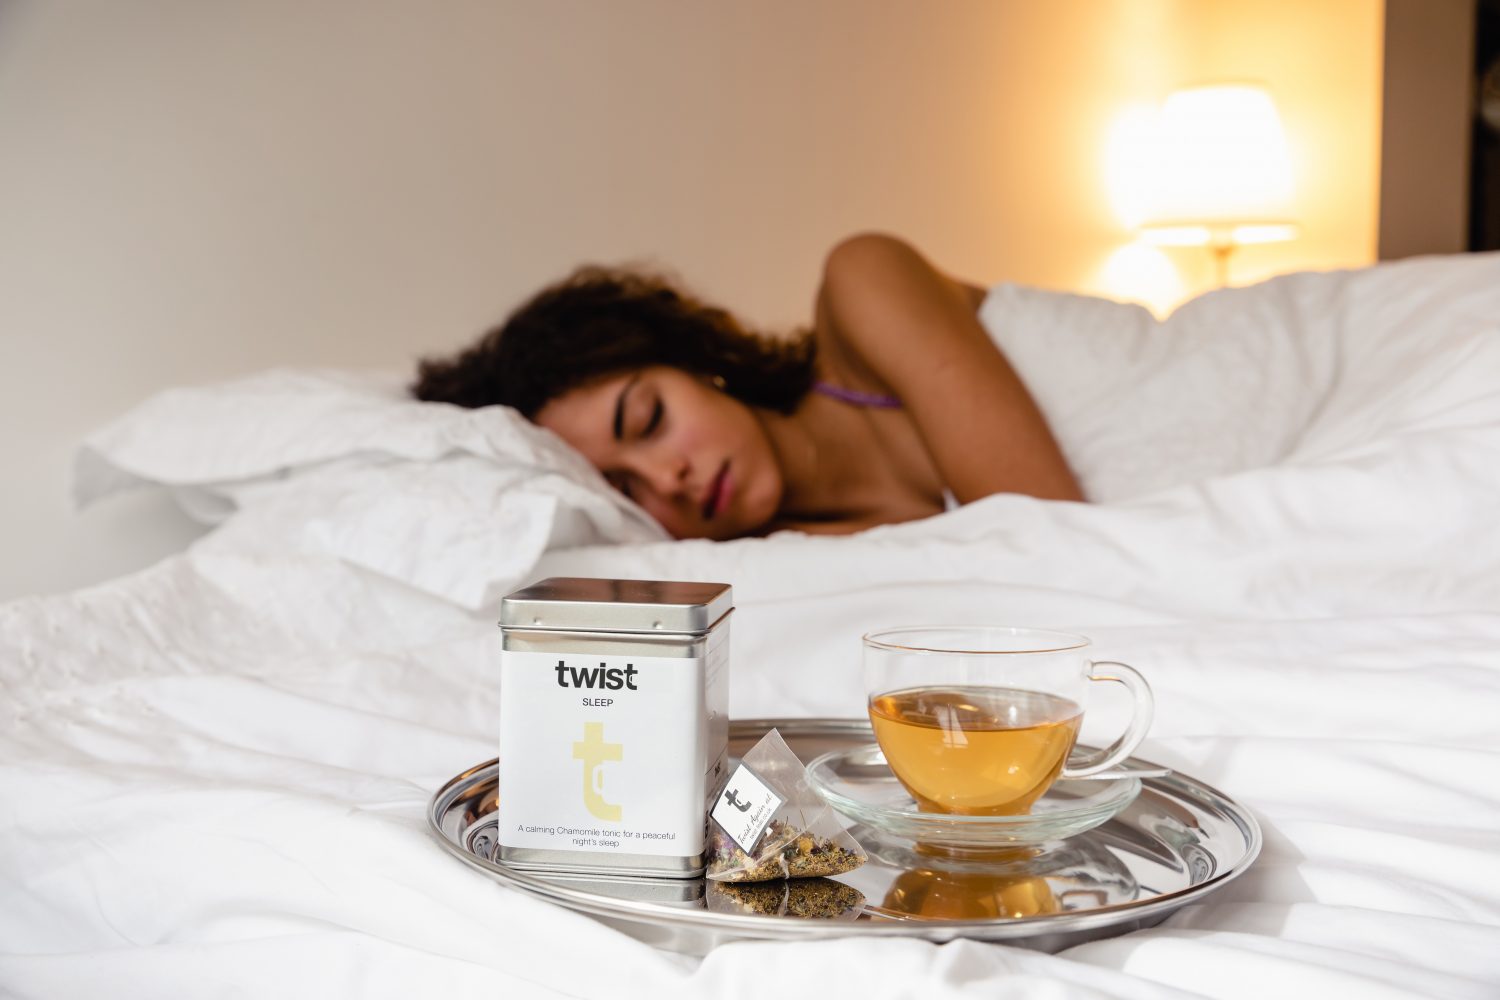 Tea can help get a good night's sleep